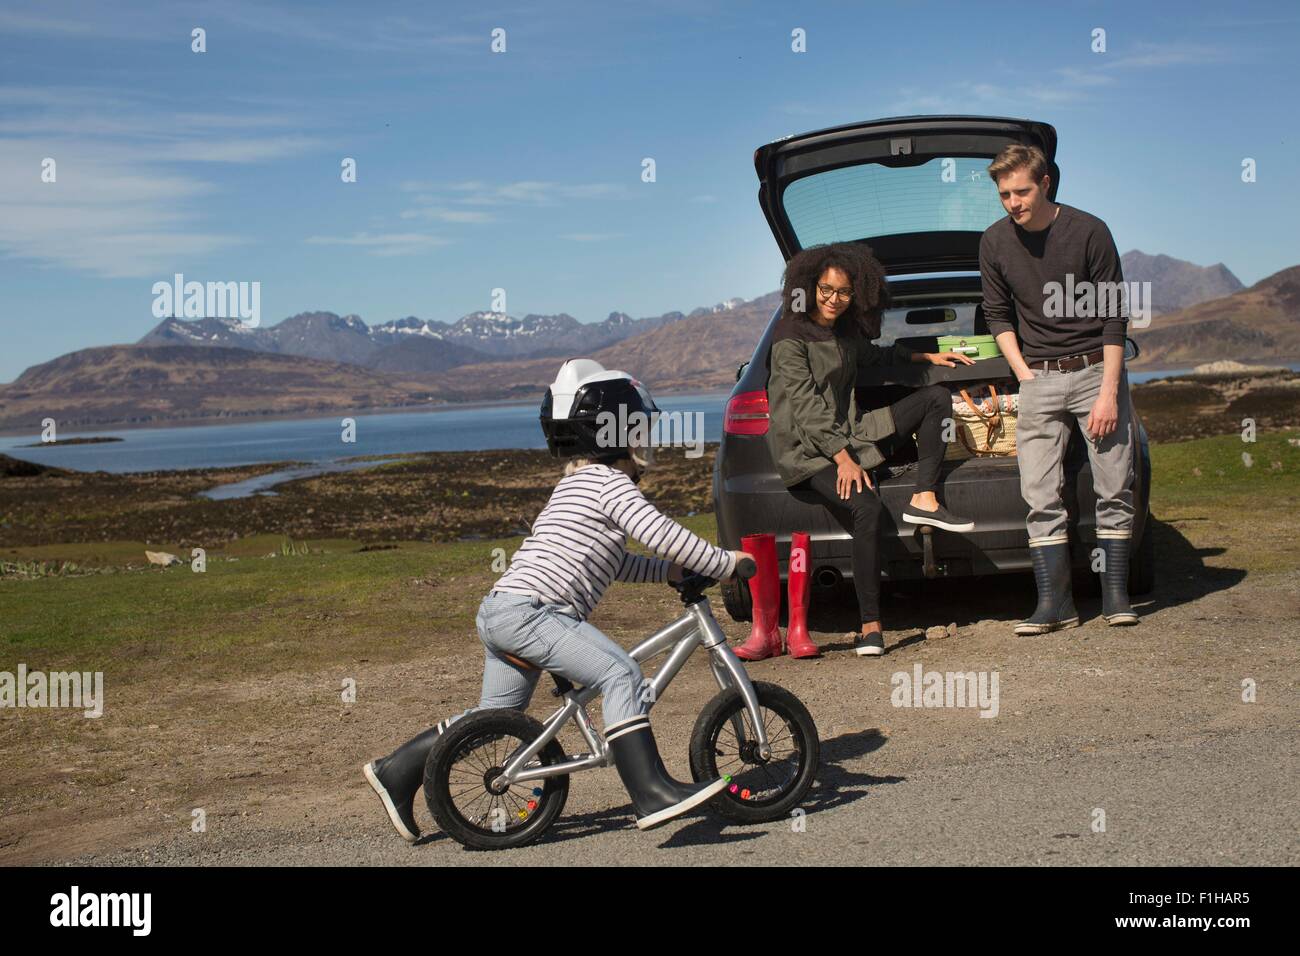 Parents watching son ride bike, Loch Eishort, Isle of Skye, Hebrides, Scotland Stock Photo